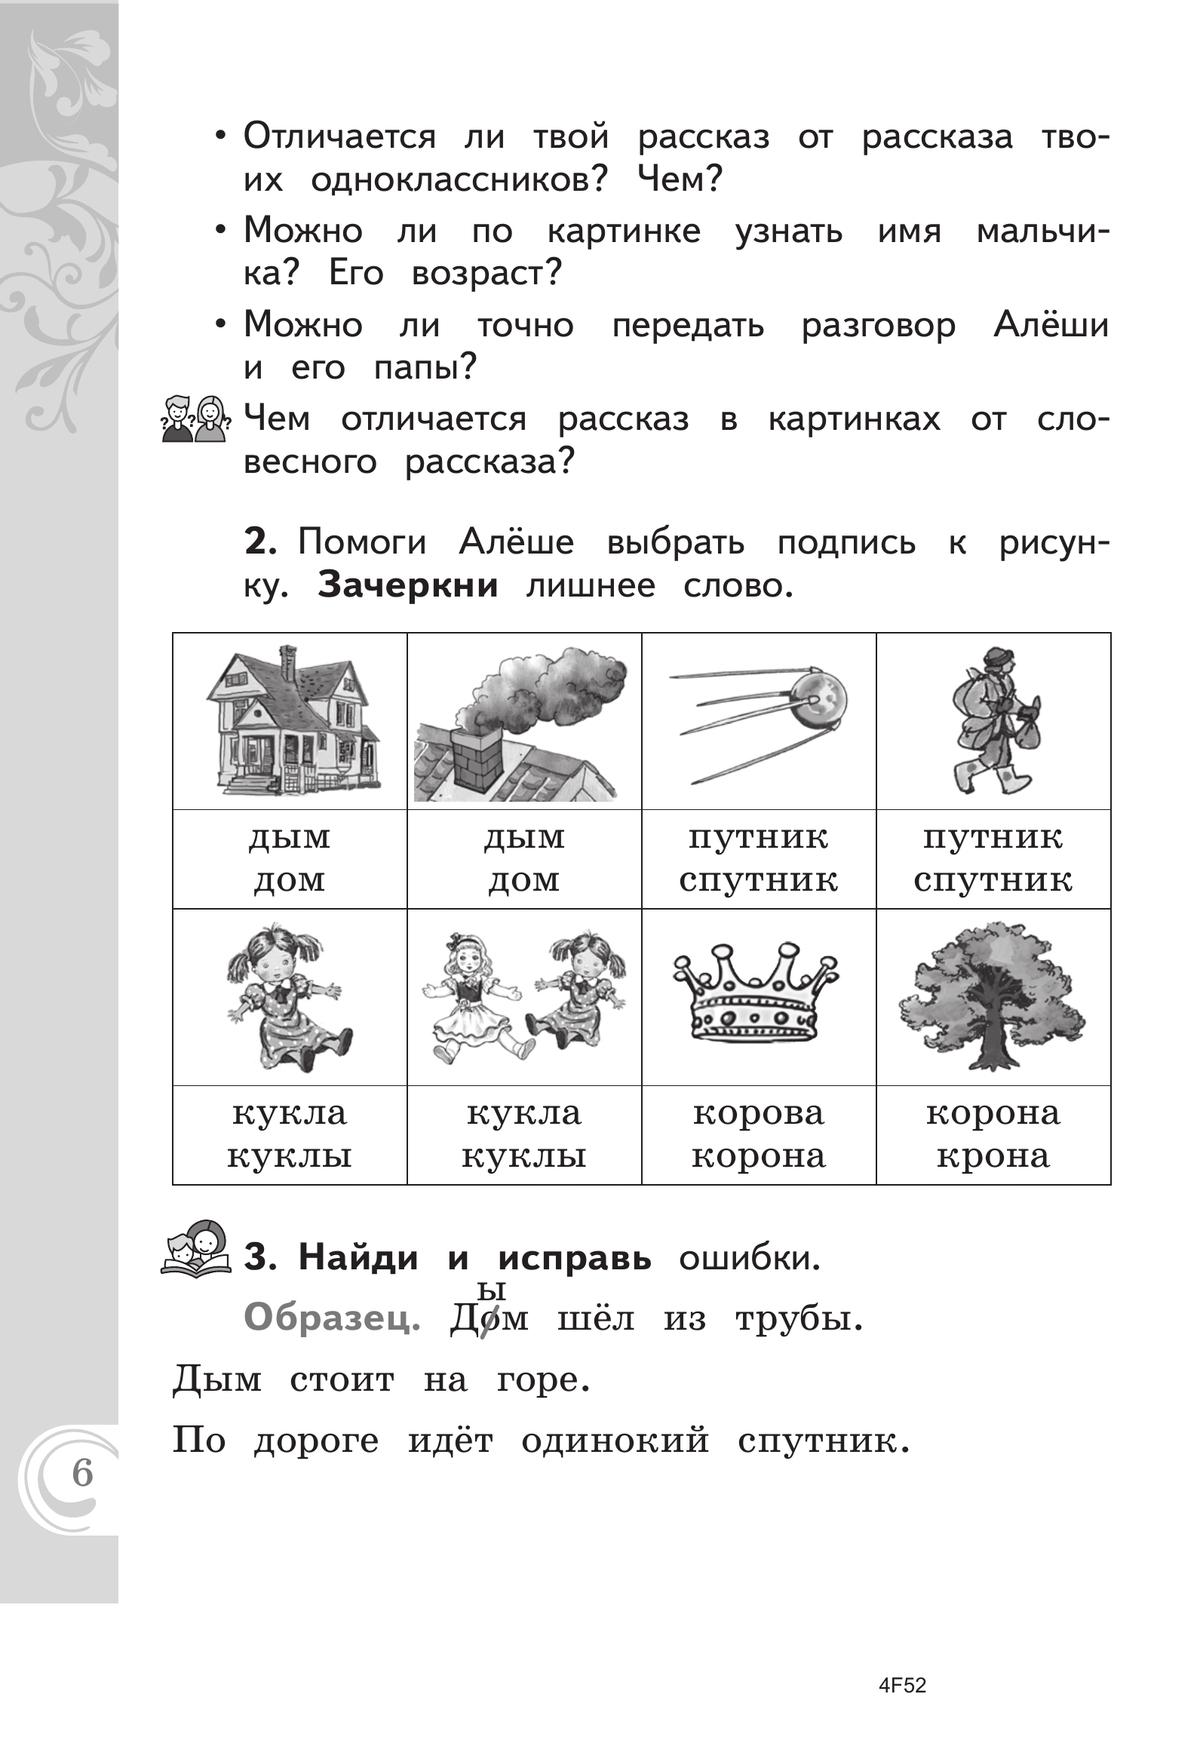 Литературное чтение на русском родном языке. 1 класс. Практикум 3